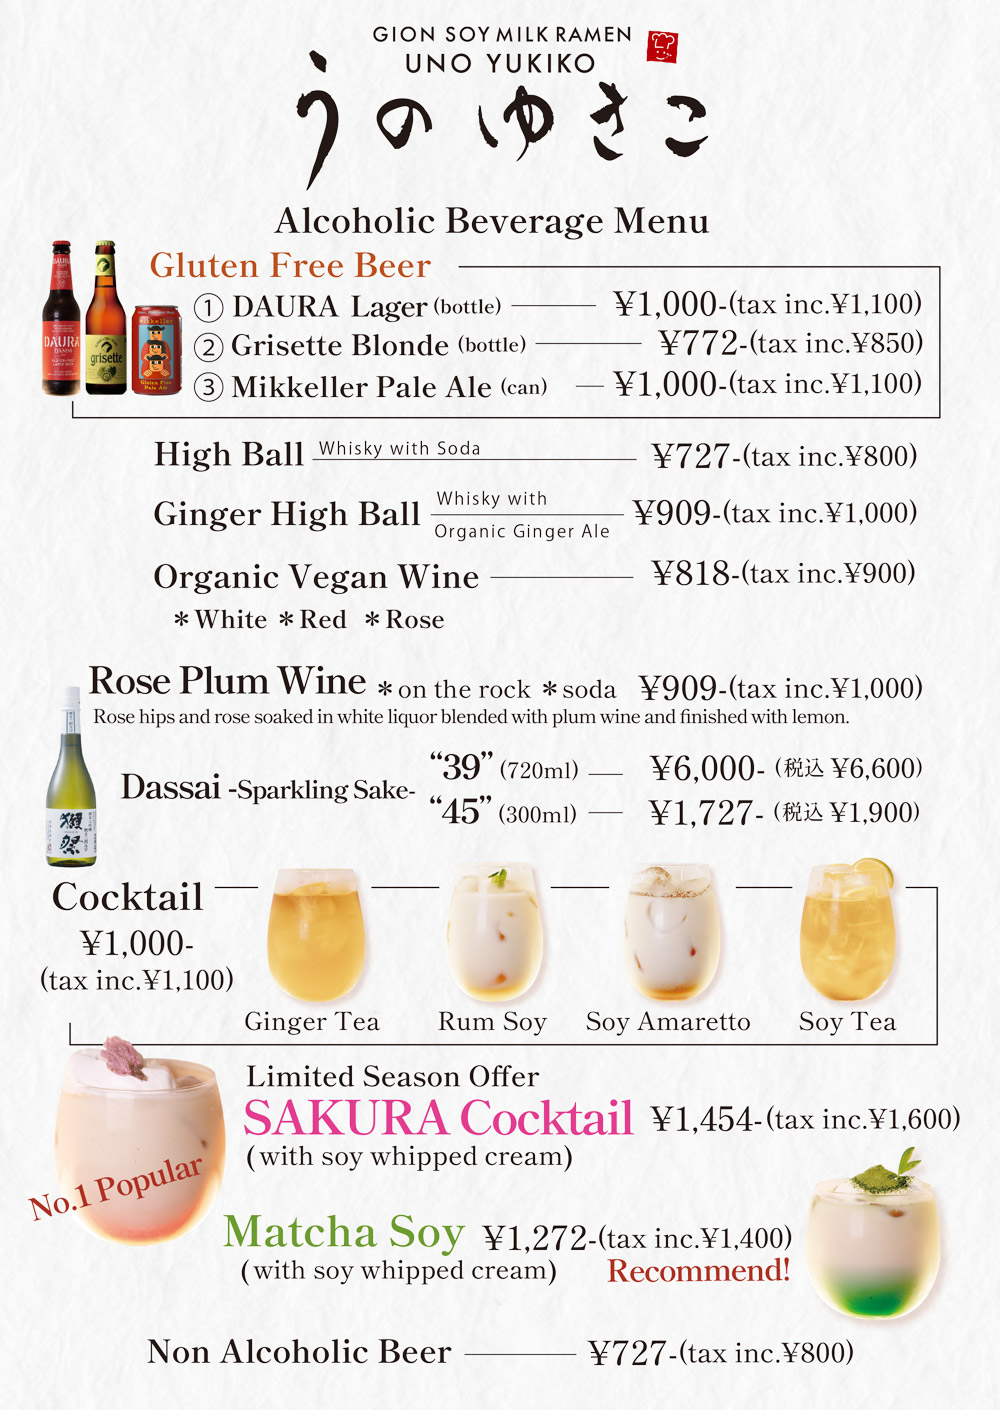 drink_menu